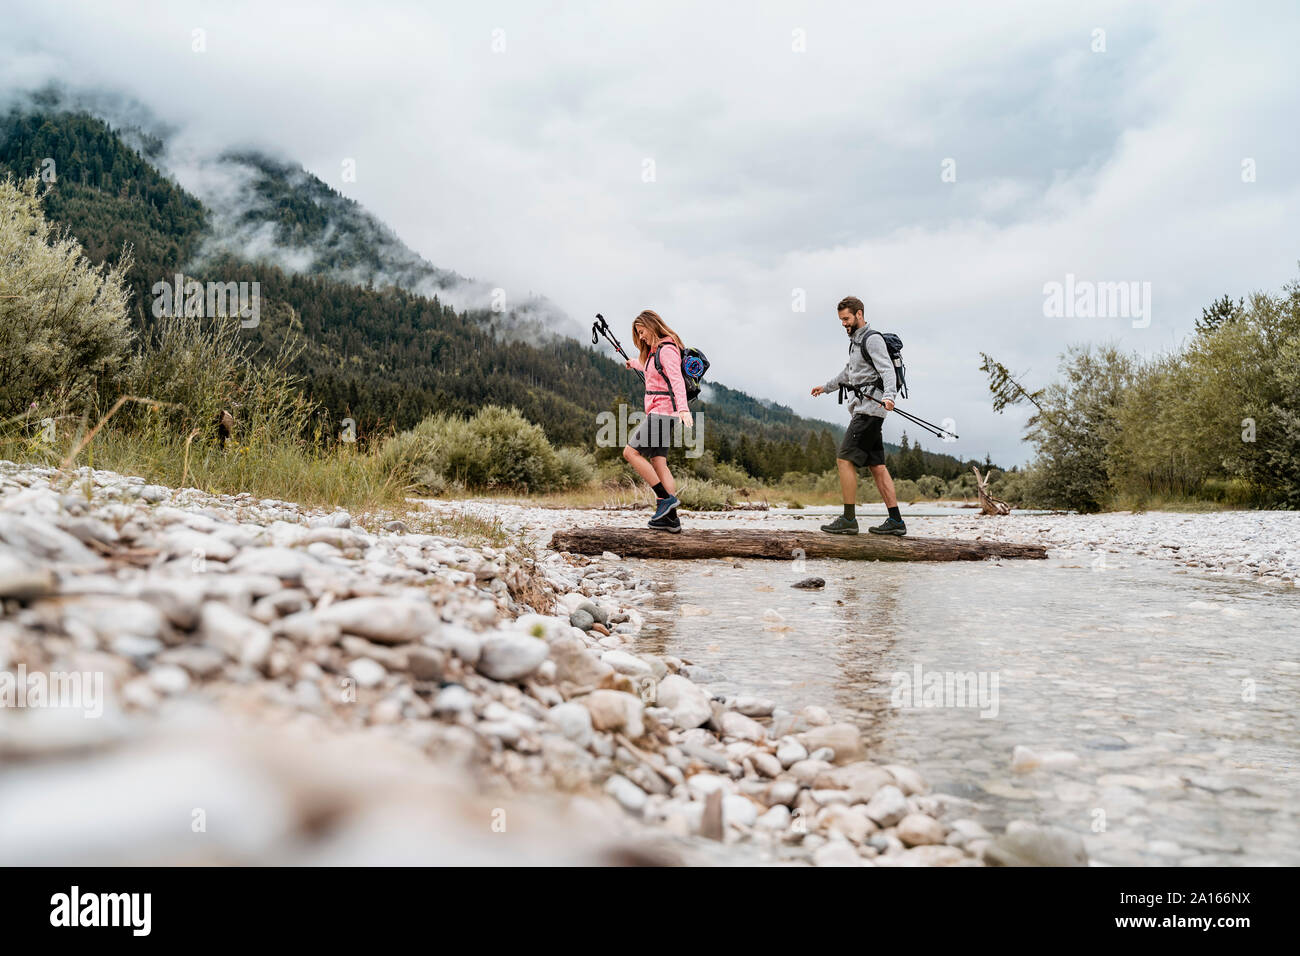 Jeune couple en randonnée crossing river sur un journal, Vorderriss, Bavière, Allemagne Banque D'Images